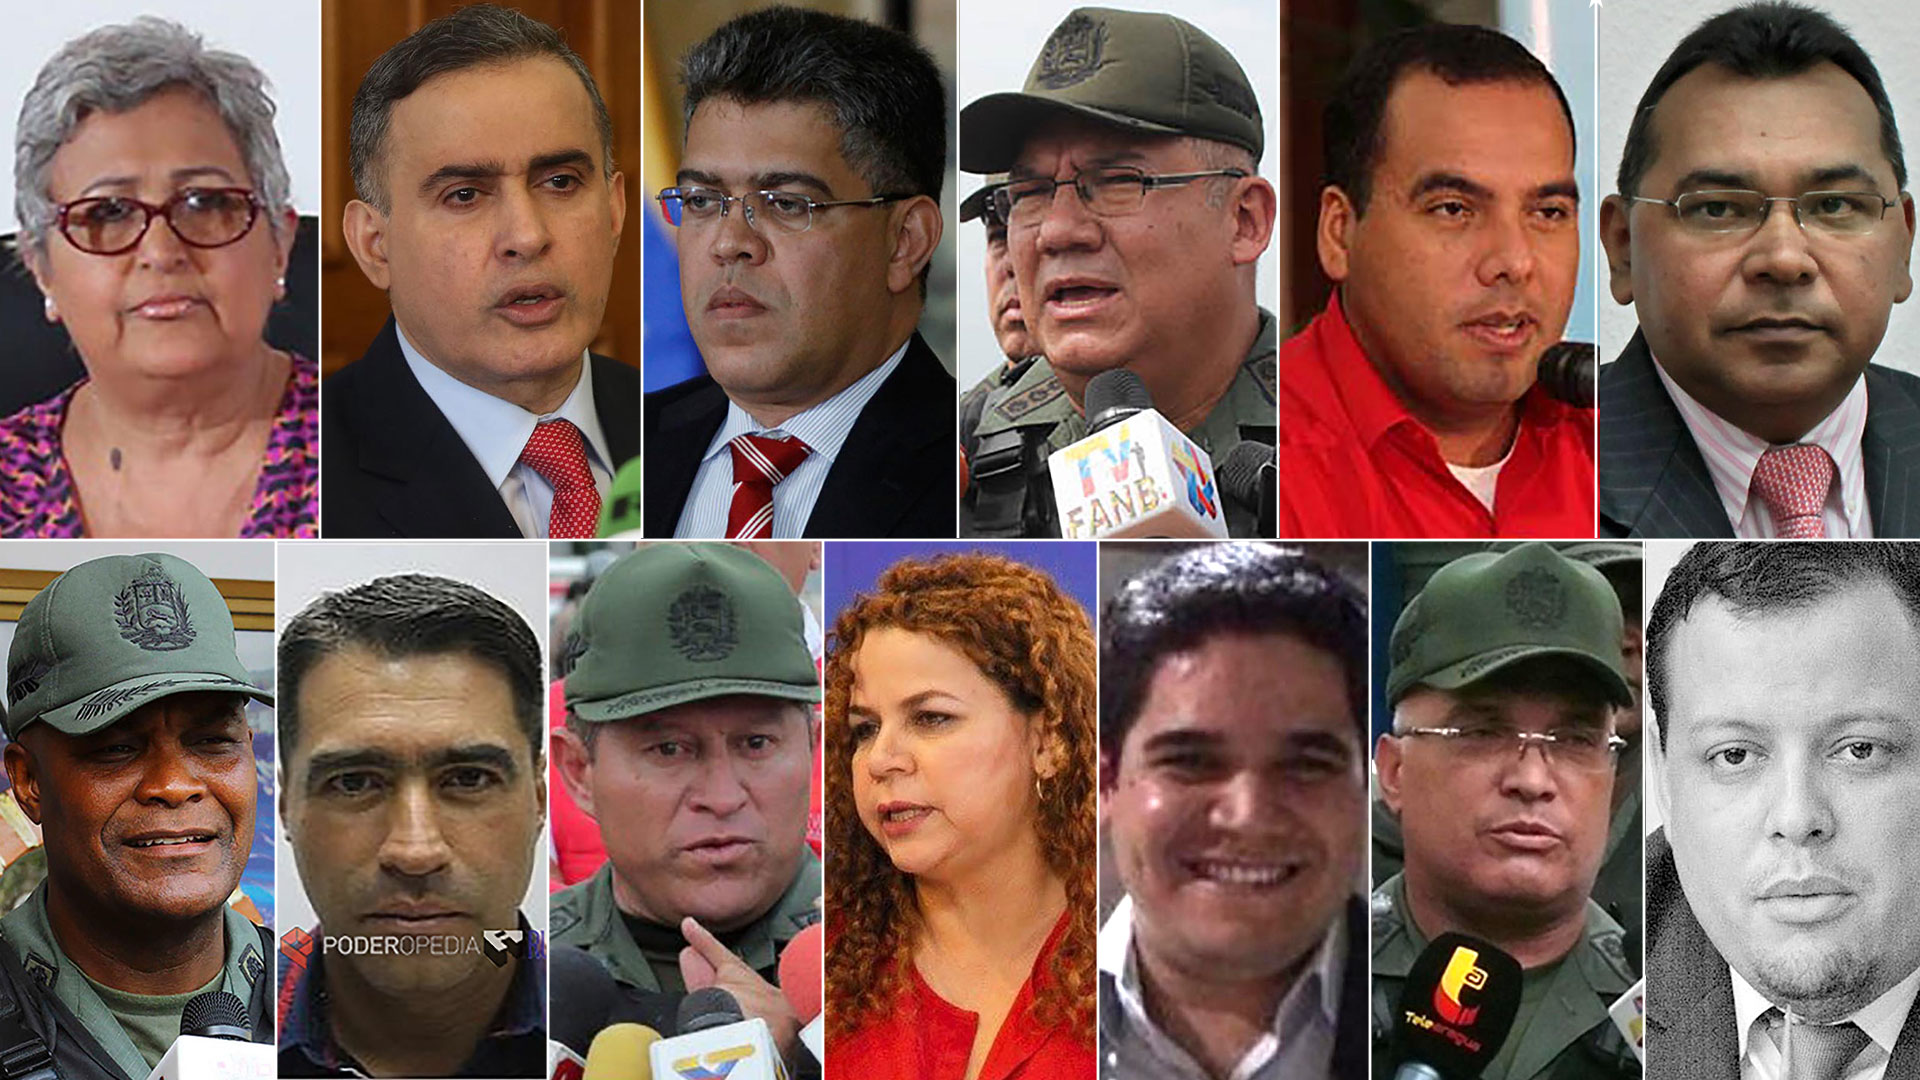 Sancionados 13 funcionarios actuales y anteriores del régimen de Venezuela por el Departamento del Tesoro de USA.